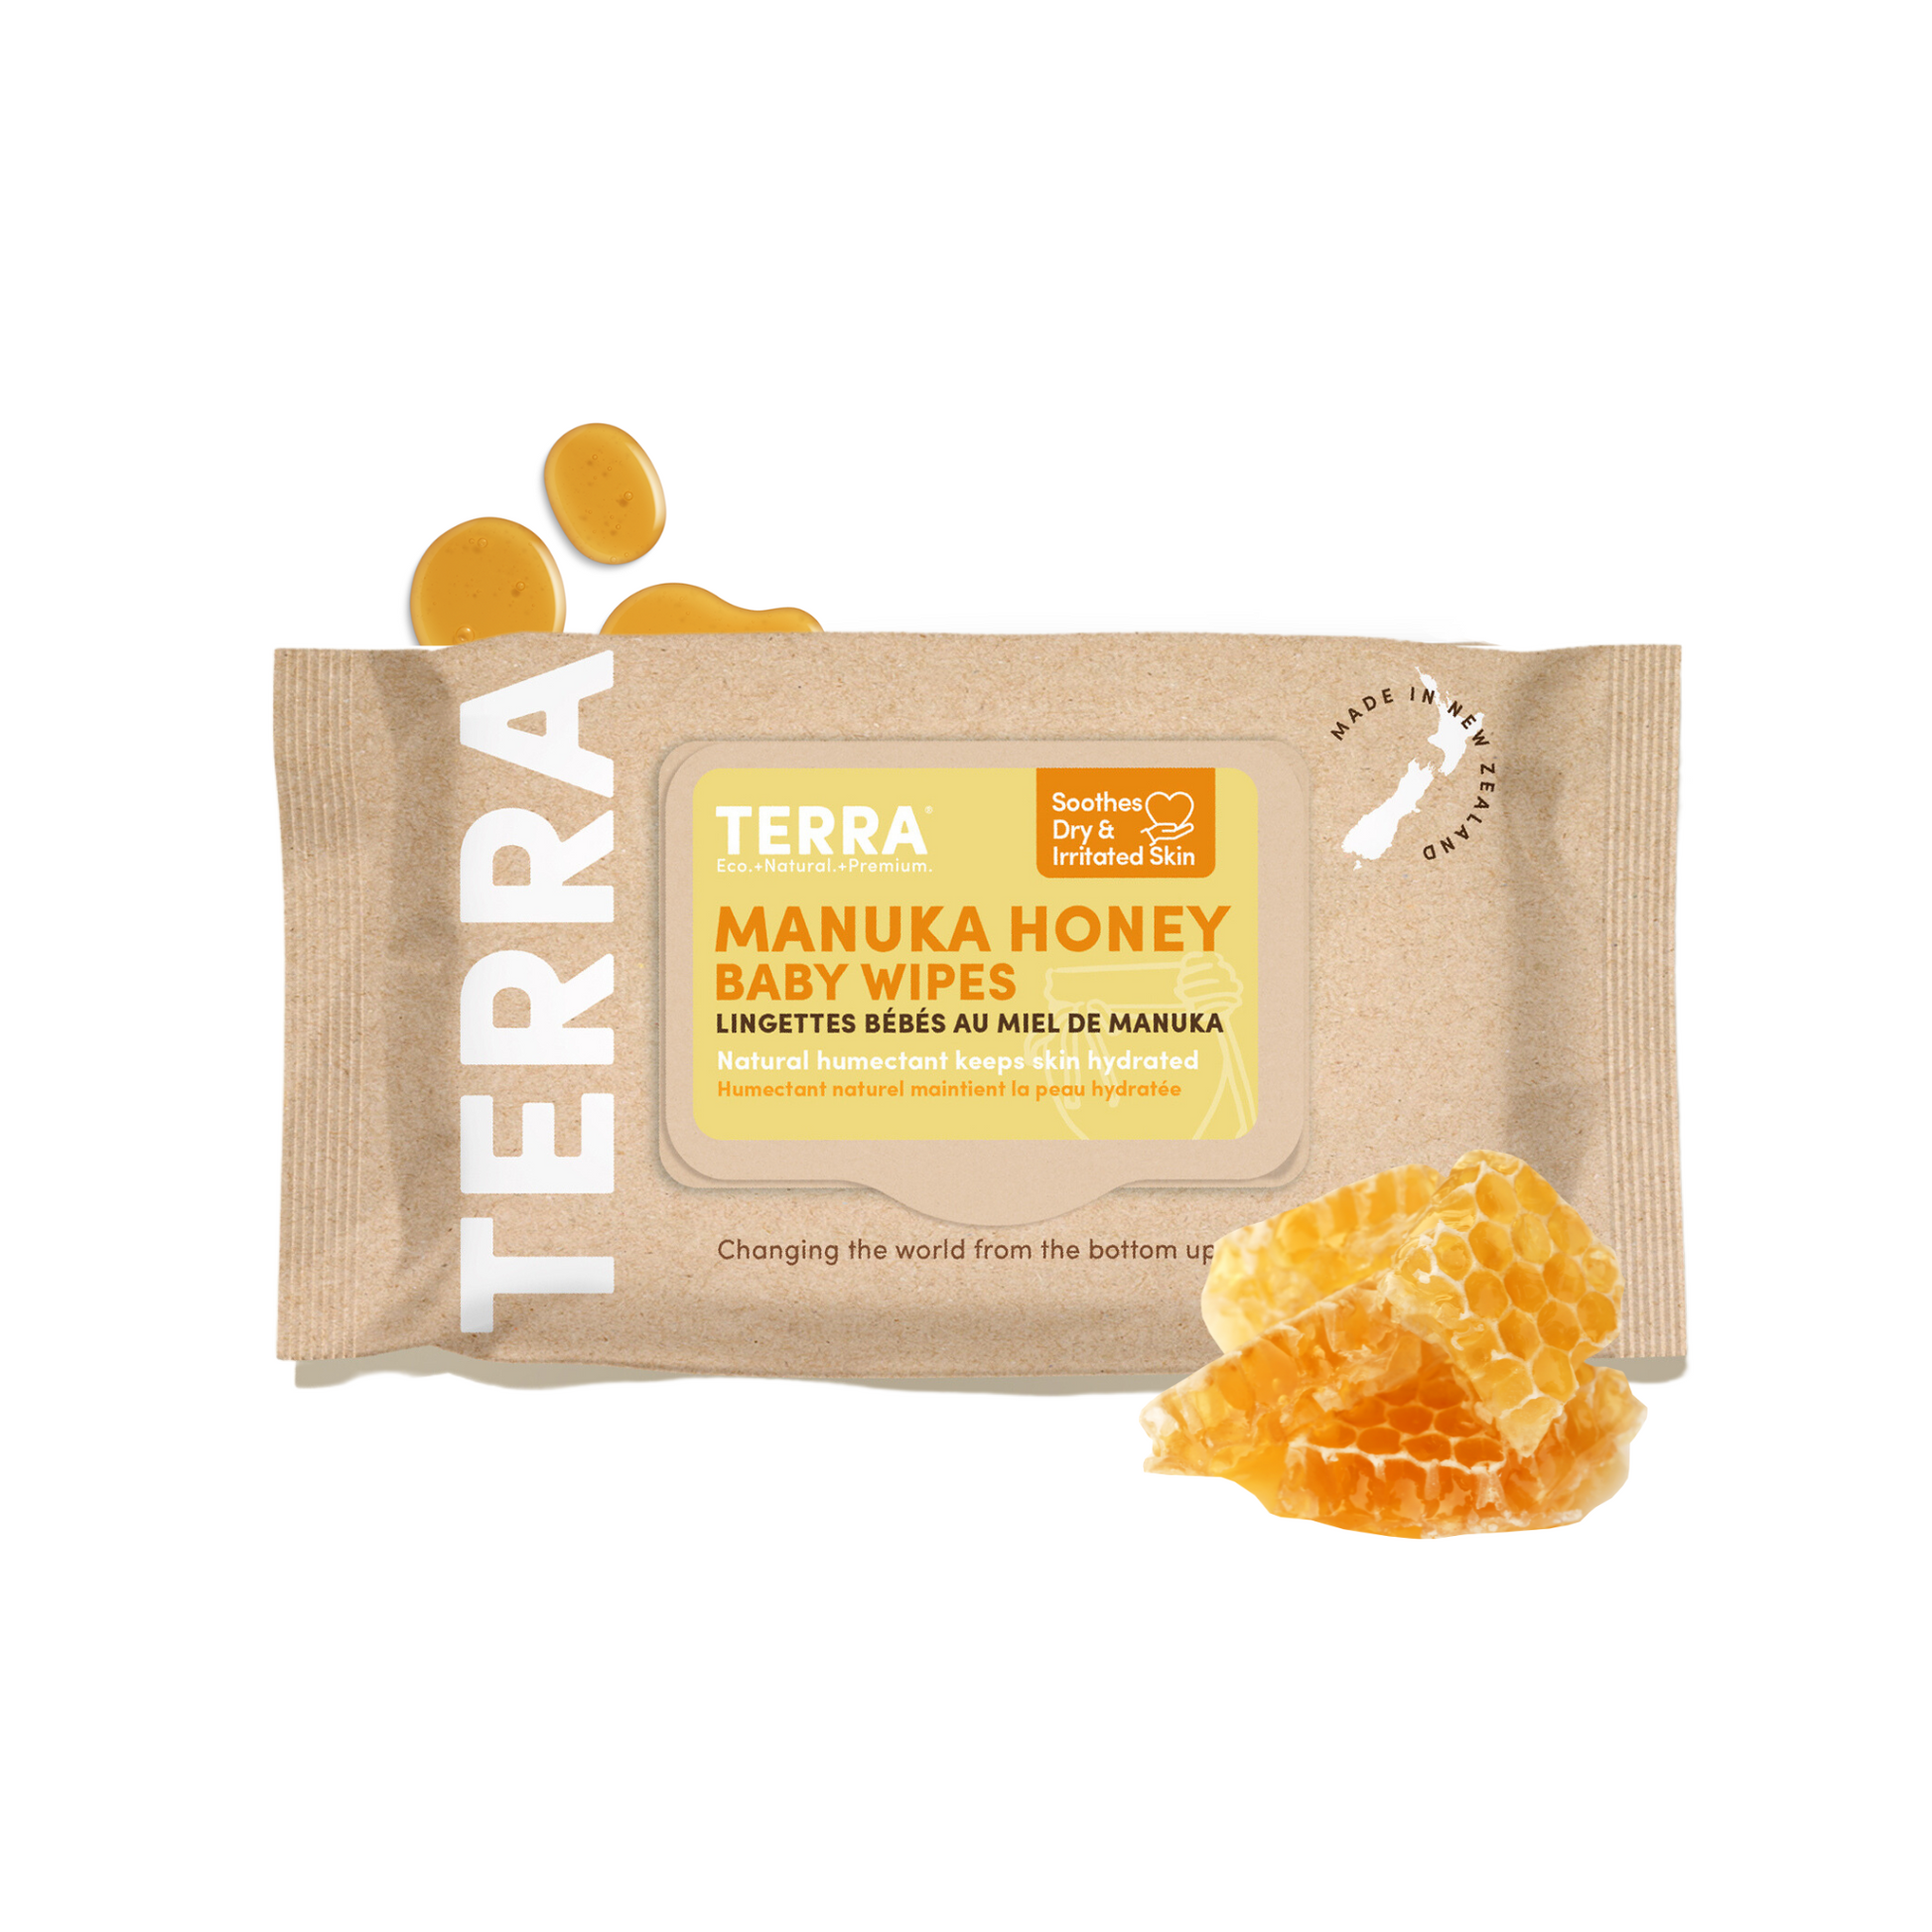 terra-manuka-honey-baby-wipes